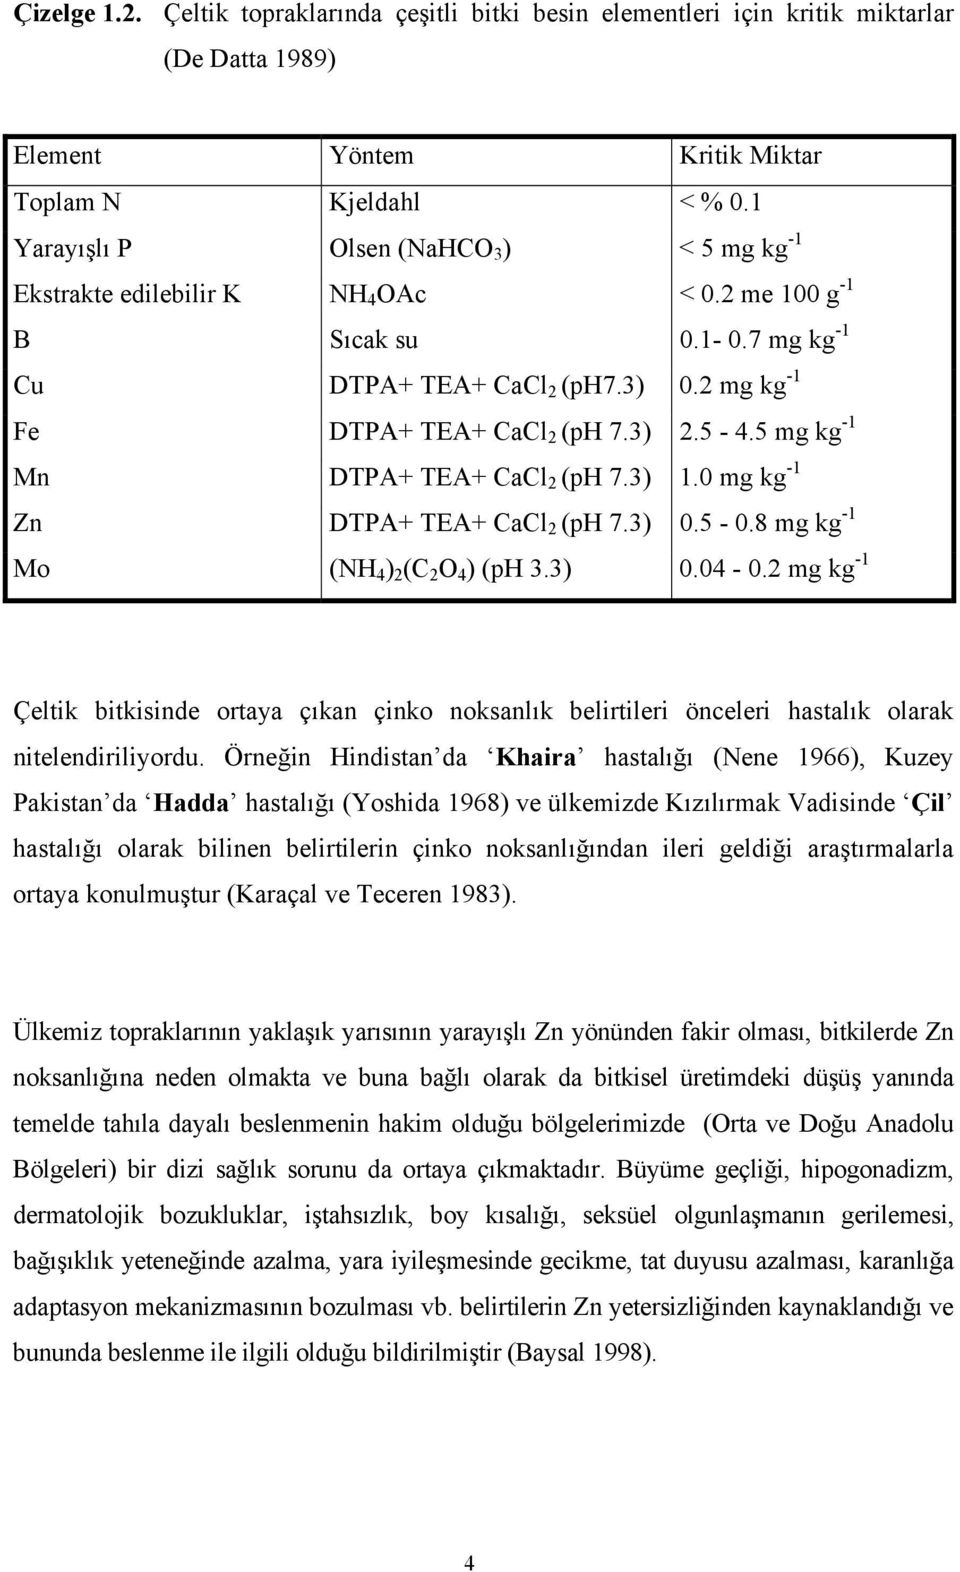 5 mg kg -1 Mn DTPA+ TEA+ CaCl 2 (ph 7.3) 1.0 mg kg -1 Zn DTPA+ TEA+ CaCl 2 (ph 7.3) 0.5-0.8 mg kg -1 Mo (NH 4 ) 2 (C 2 O 4 ) (ph 3.3) 0.04-0.